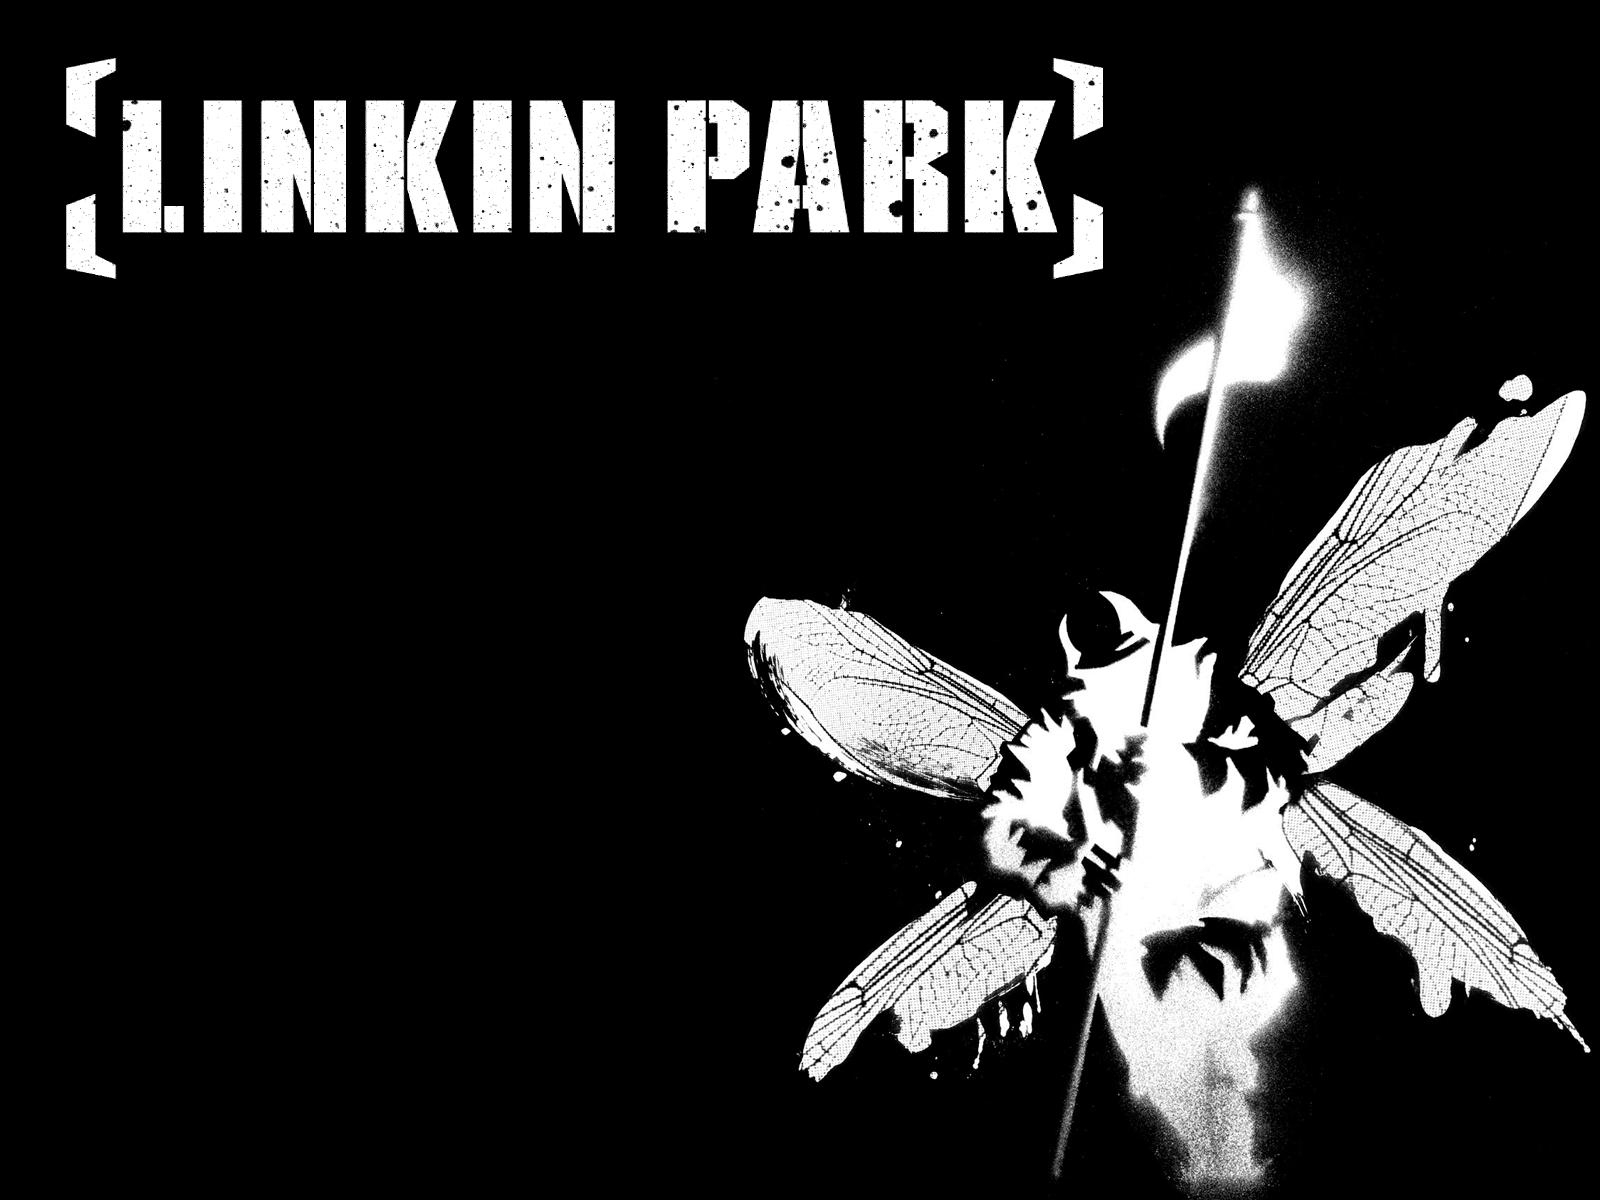 linkin park wallpaper hd,bianco e nero,font,fotografia in bianco e nero,disegno grafico,ala